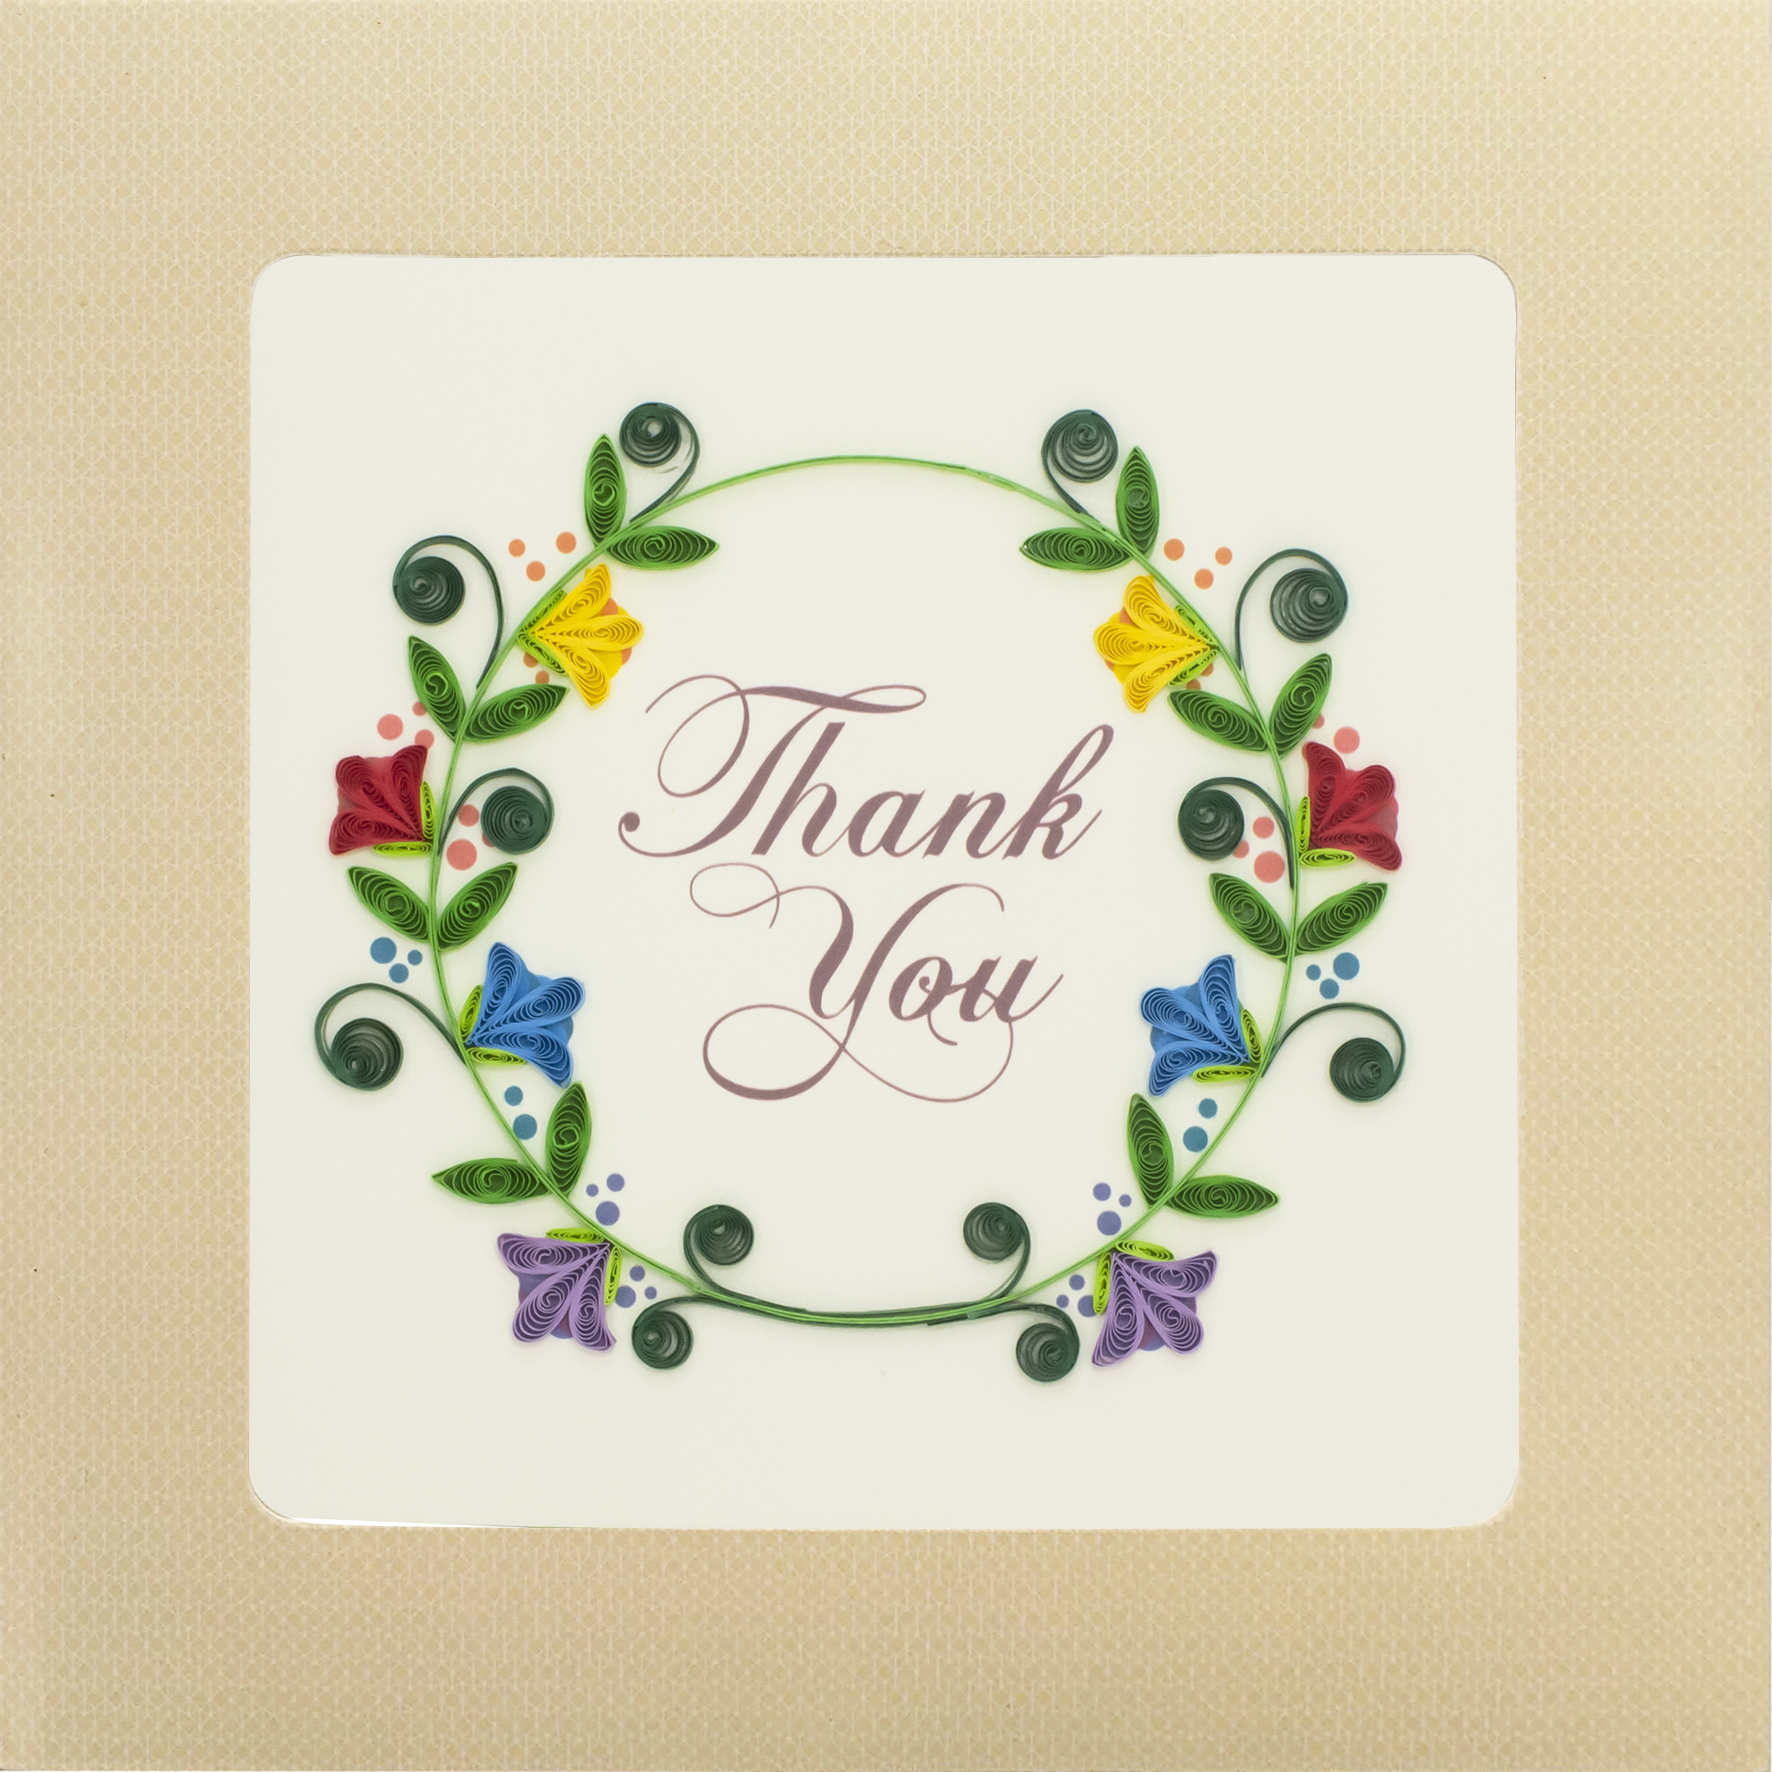 Thiệp Handmade - Thiệp Vòng hoa cảm ơn nghệ thuật giấy xoắn (Quilling Card) - Tặng Kèm Khung Giấy Để Bàn - Thiệp chúc mừng sinh nhật, kỷ niệm, tình yêu, cảm ơn…